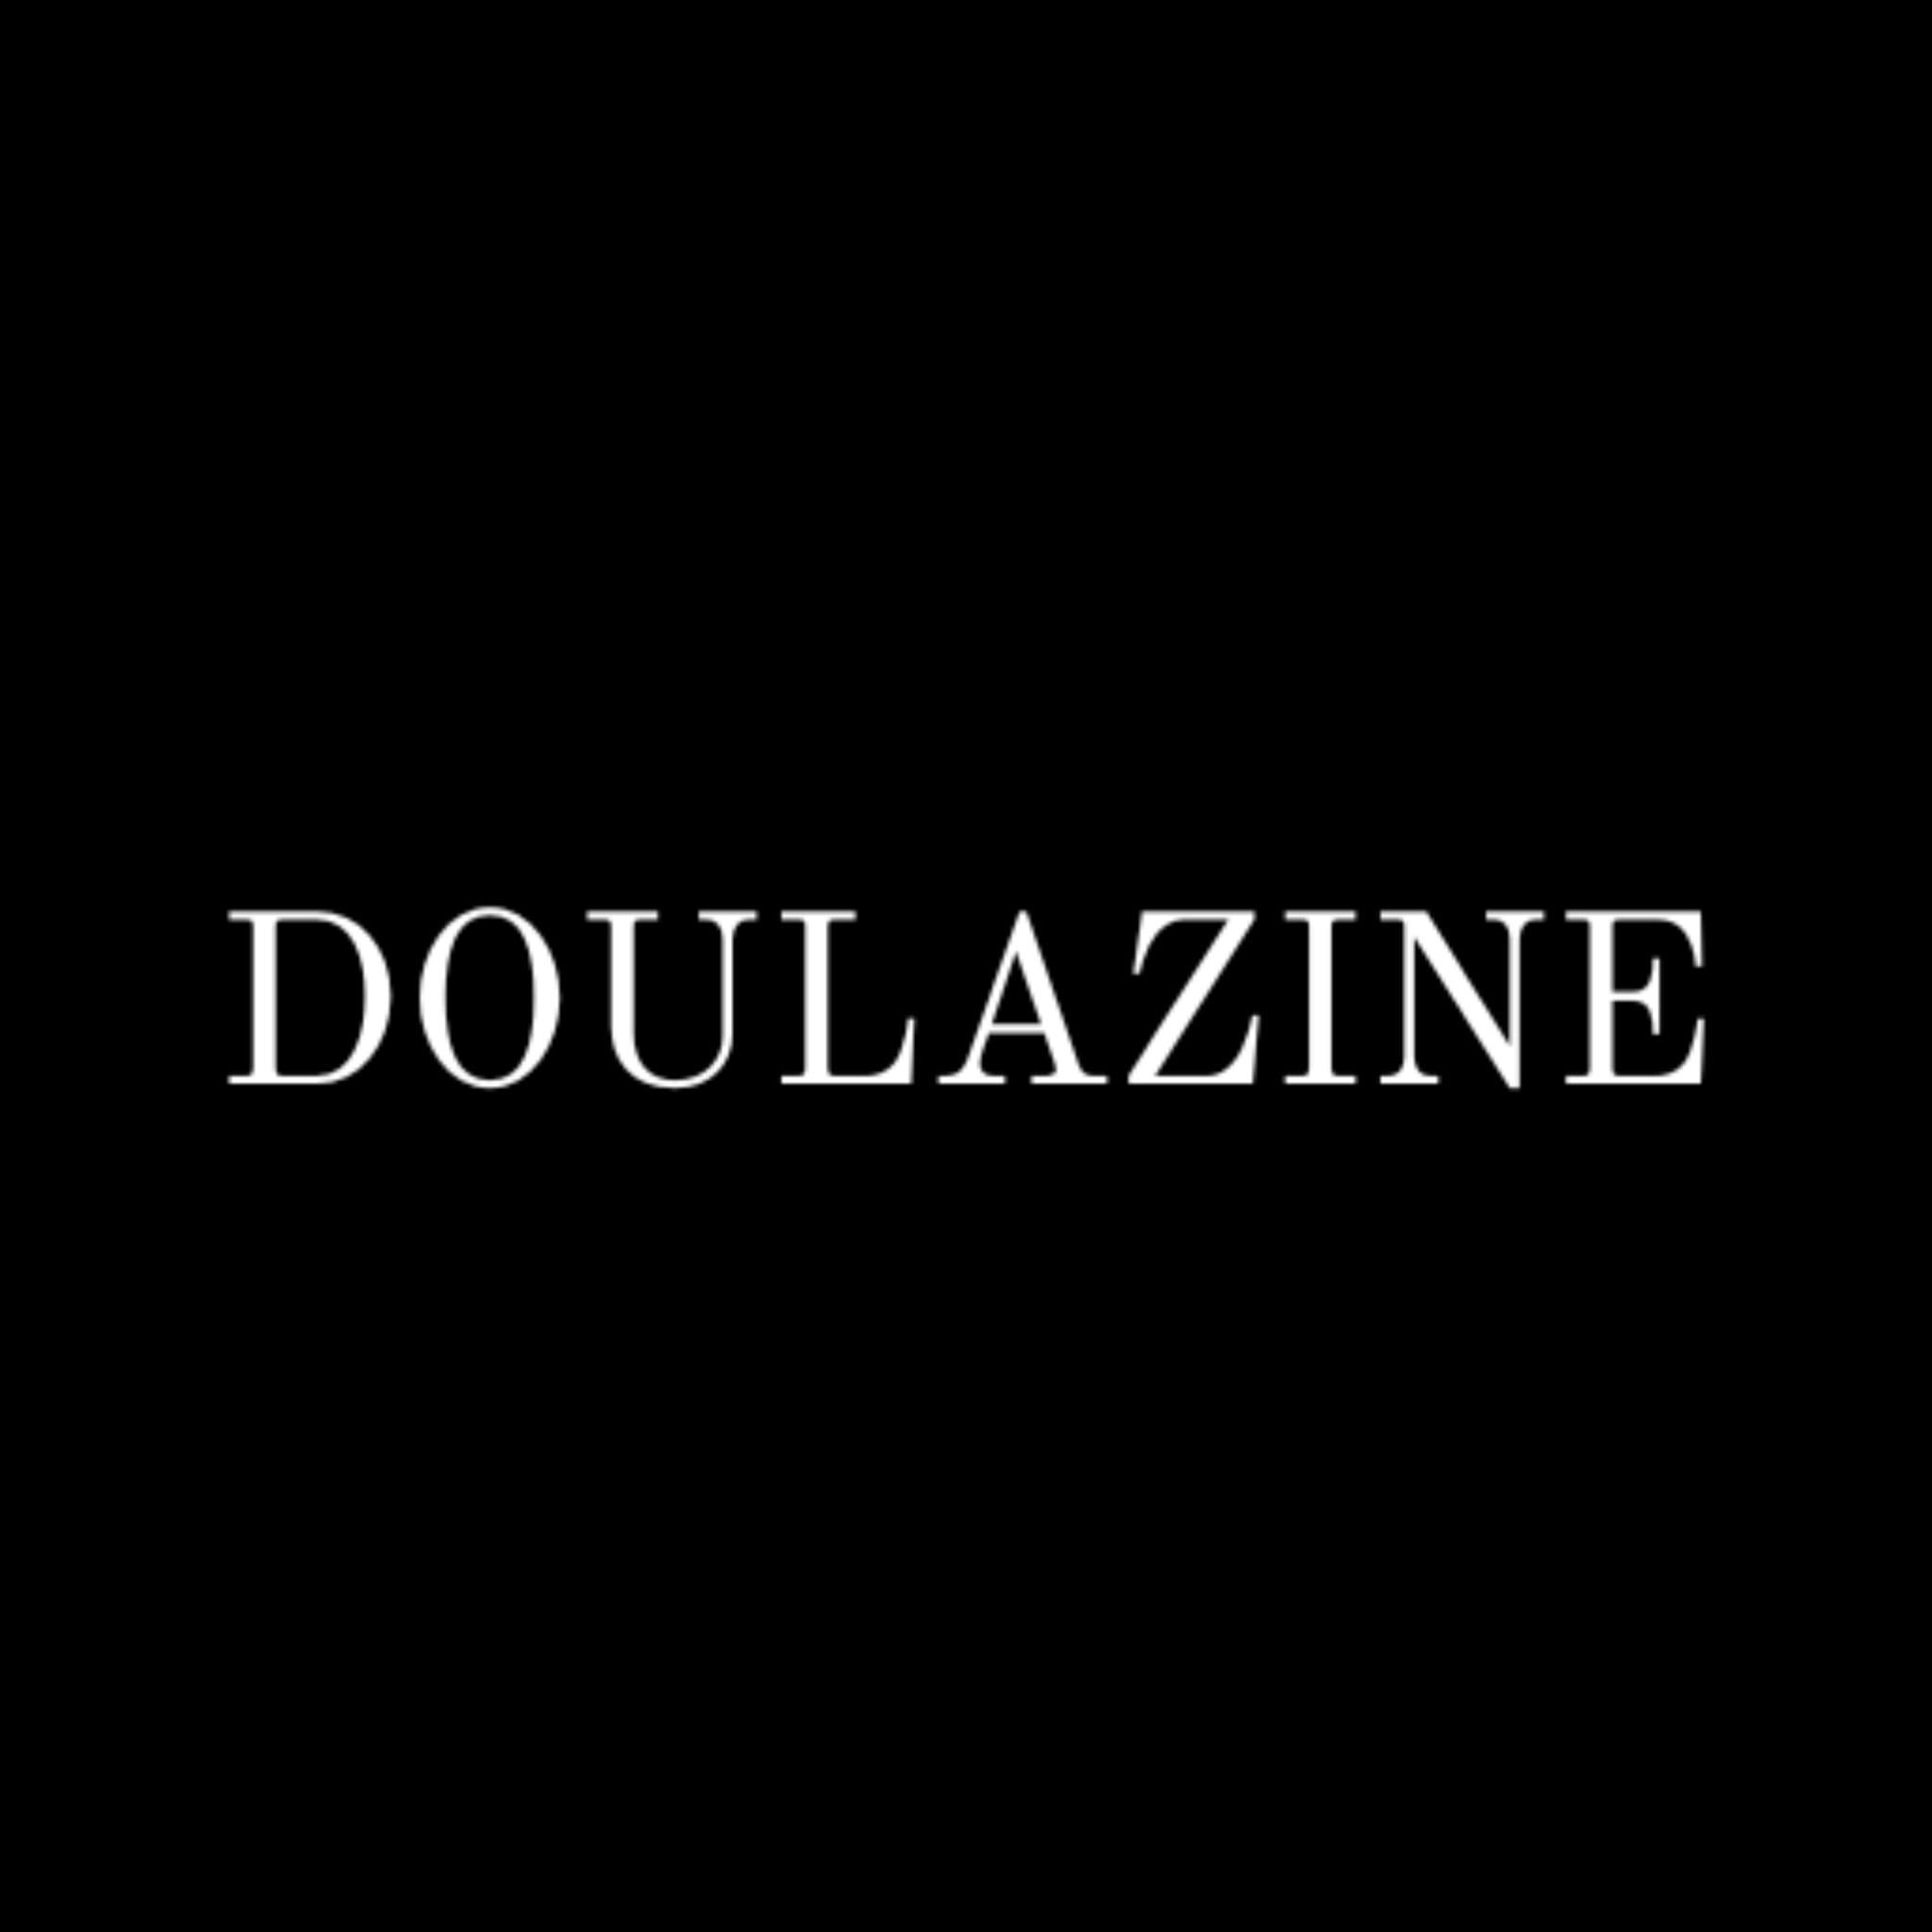 Doulazine